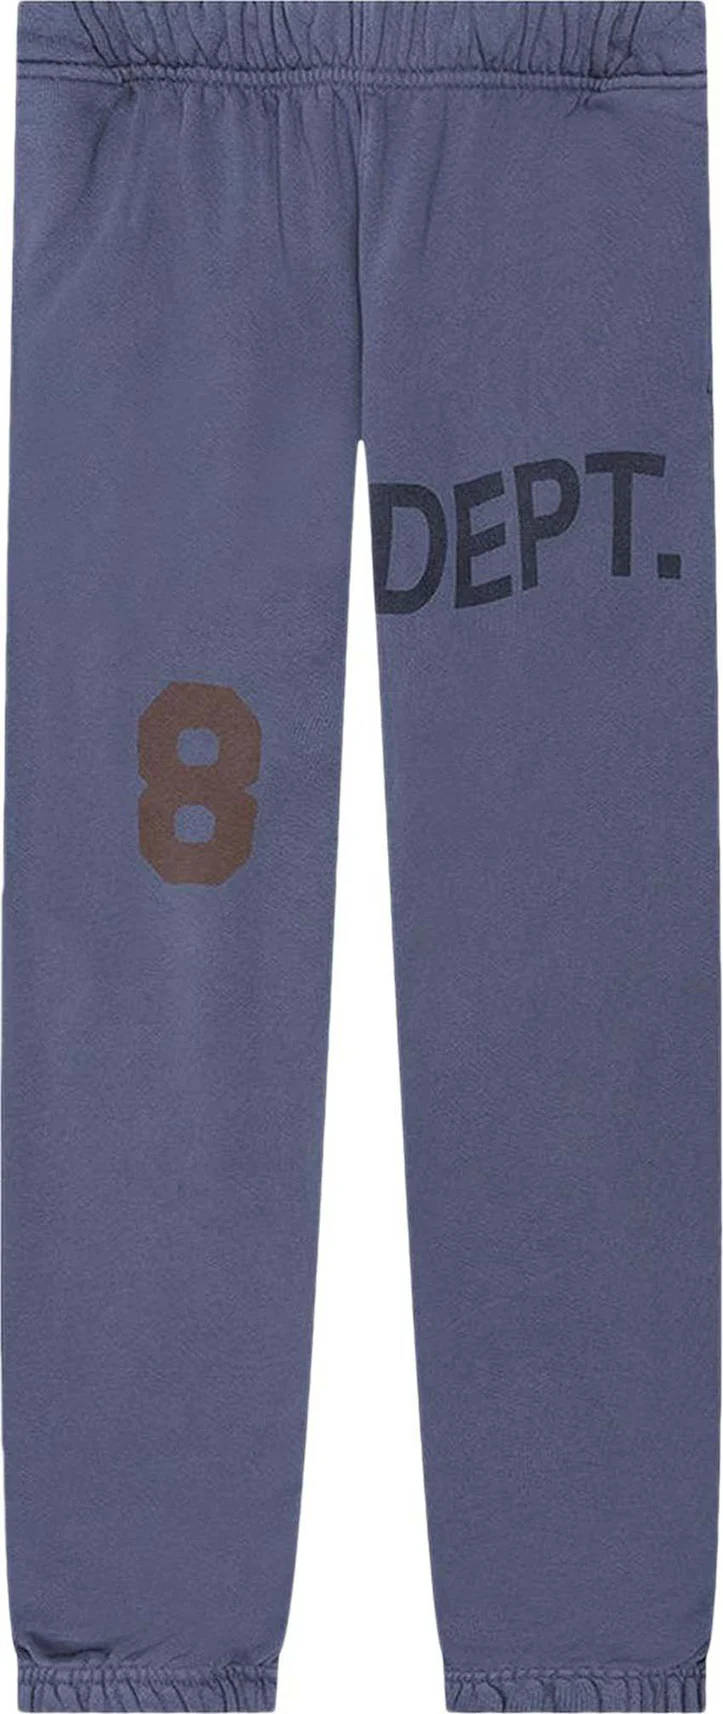 Gallery Dept. Deep Logo Sweatpants Navy Men's - US